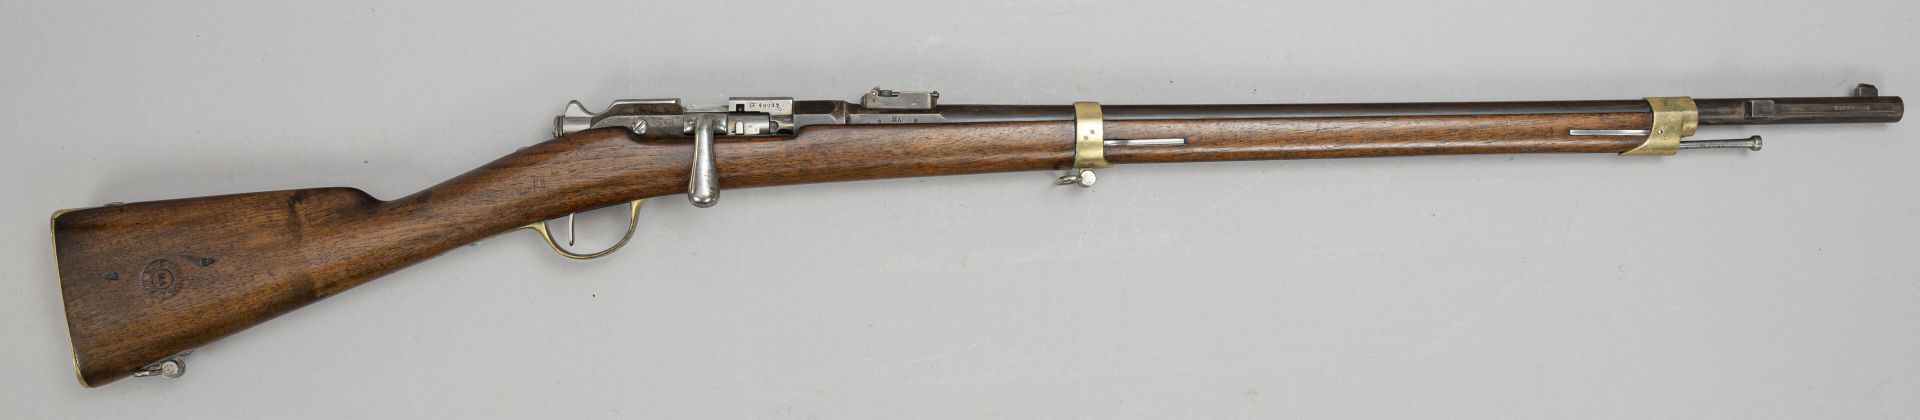 Null 法国
1874型骑兵步枪
带马卡龙的木质枪托，箱子上有图勒制造的标记，所有的黄铜饰物都打过孔，弯曲的后膛，铁棒的钉头 
116厘米